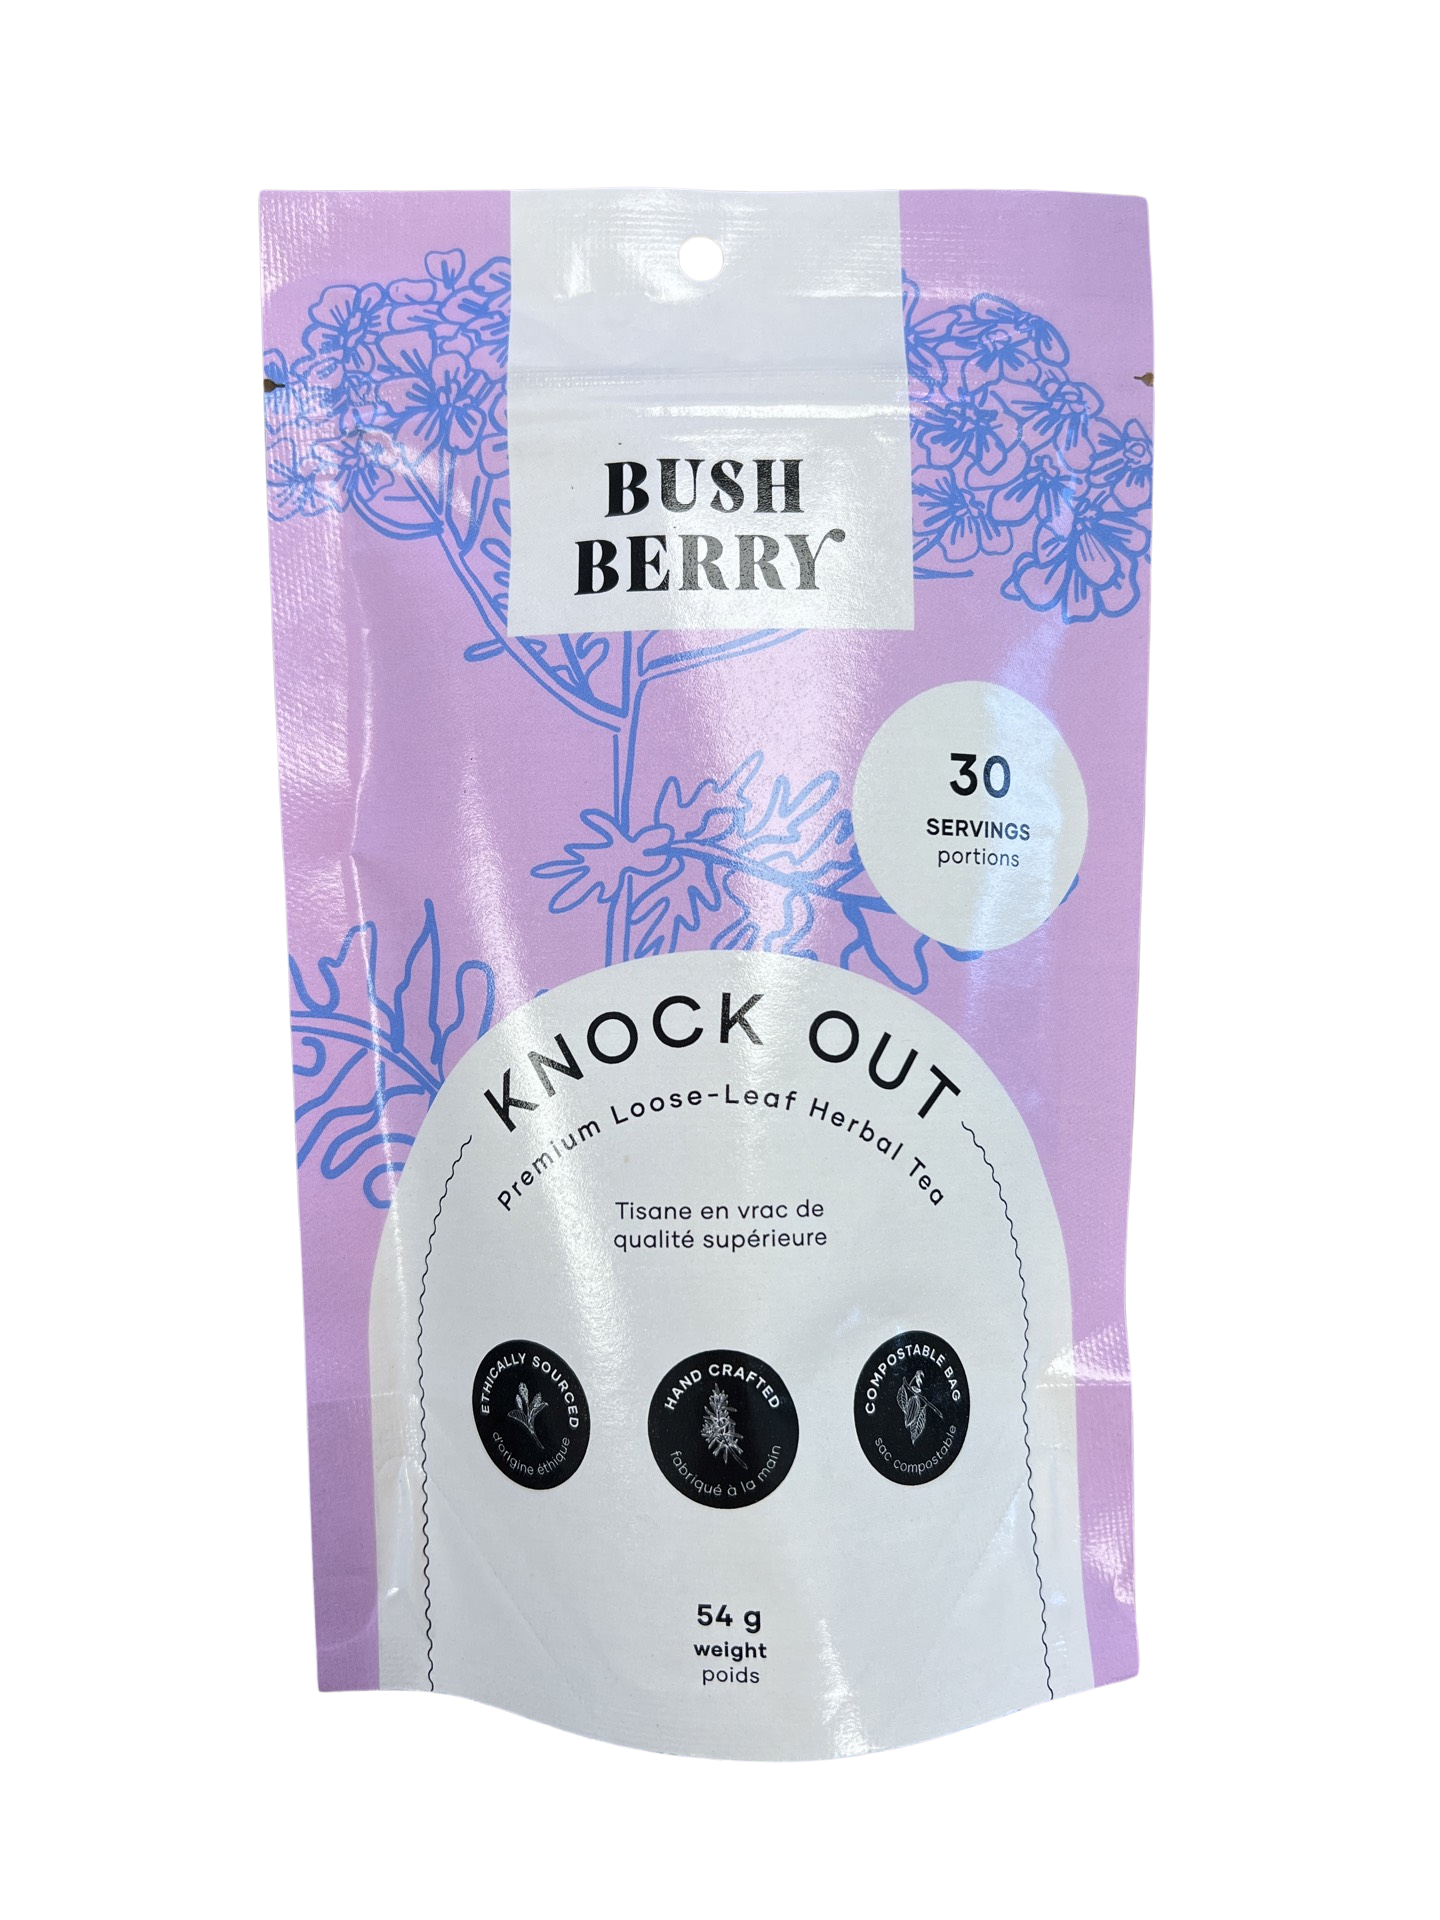 Bush Berry - Knock Out - Loose Tea Blend